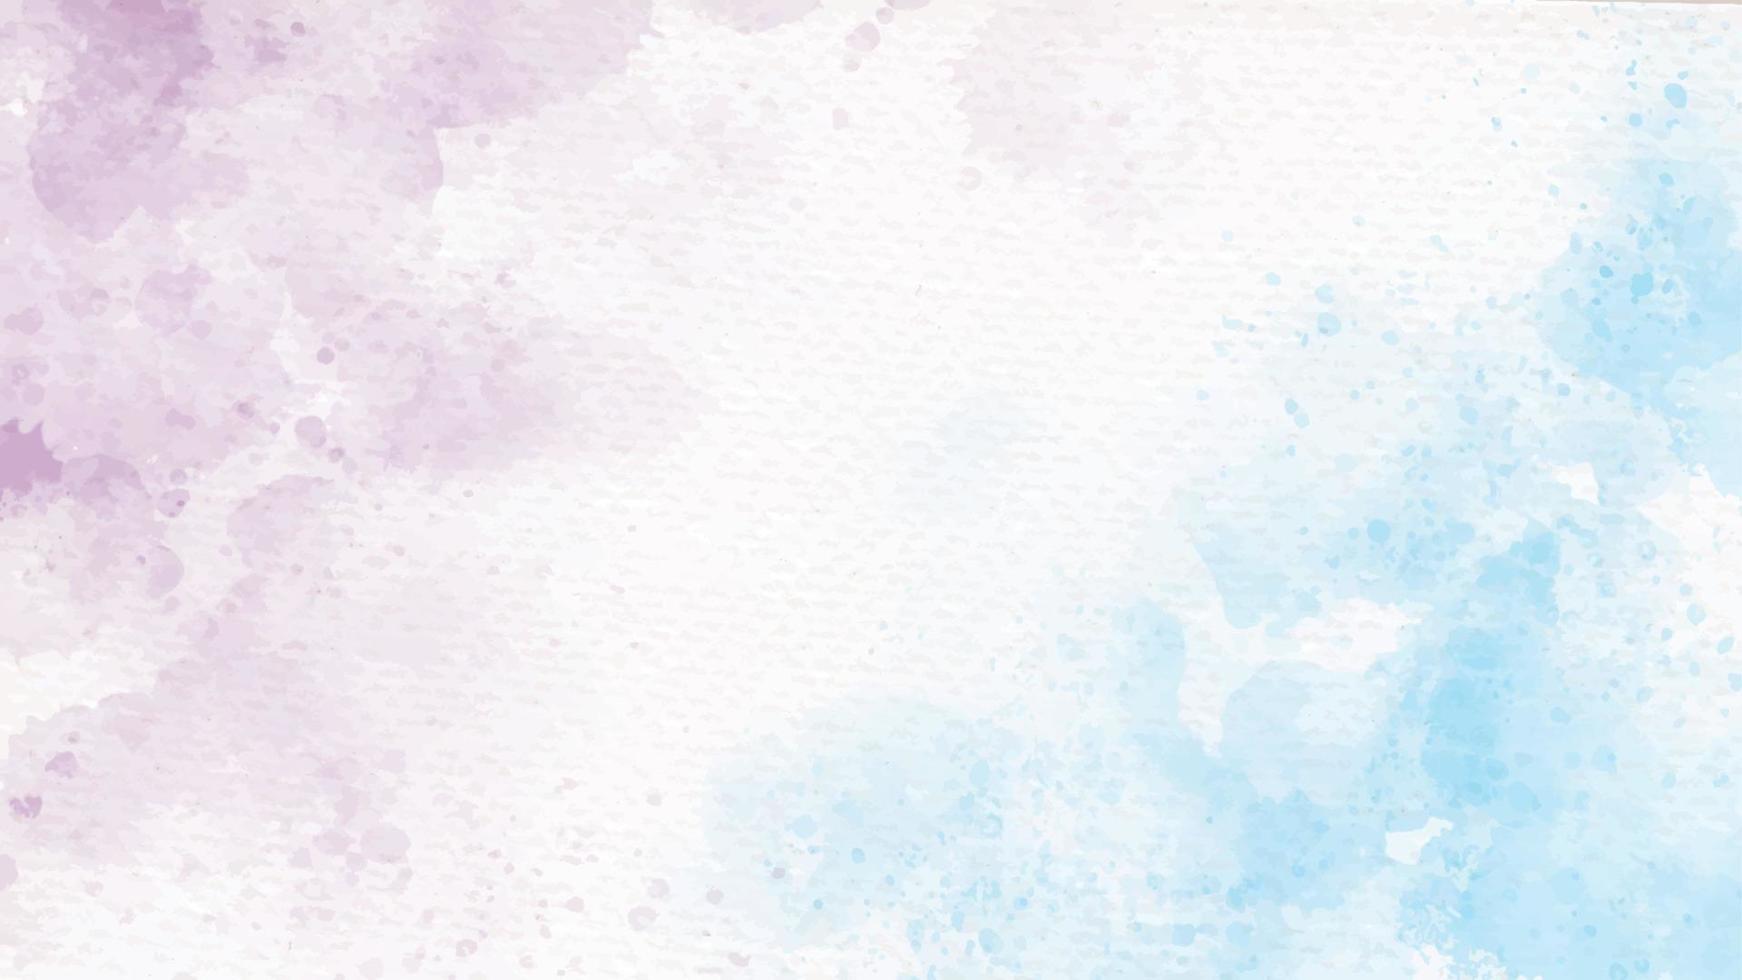 blu e viola arcobaleno pastello unicorno girly acquerello su carta sfondo astratto vettore